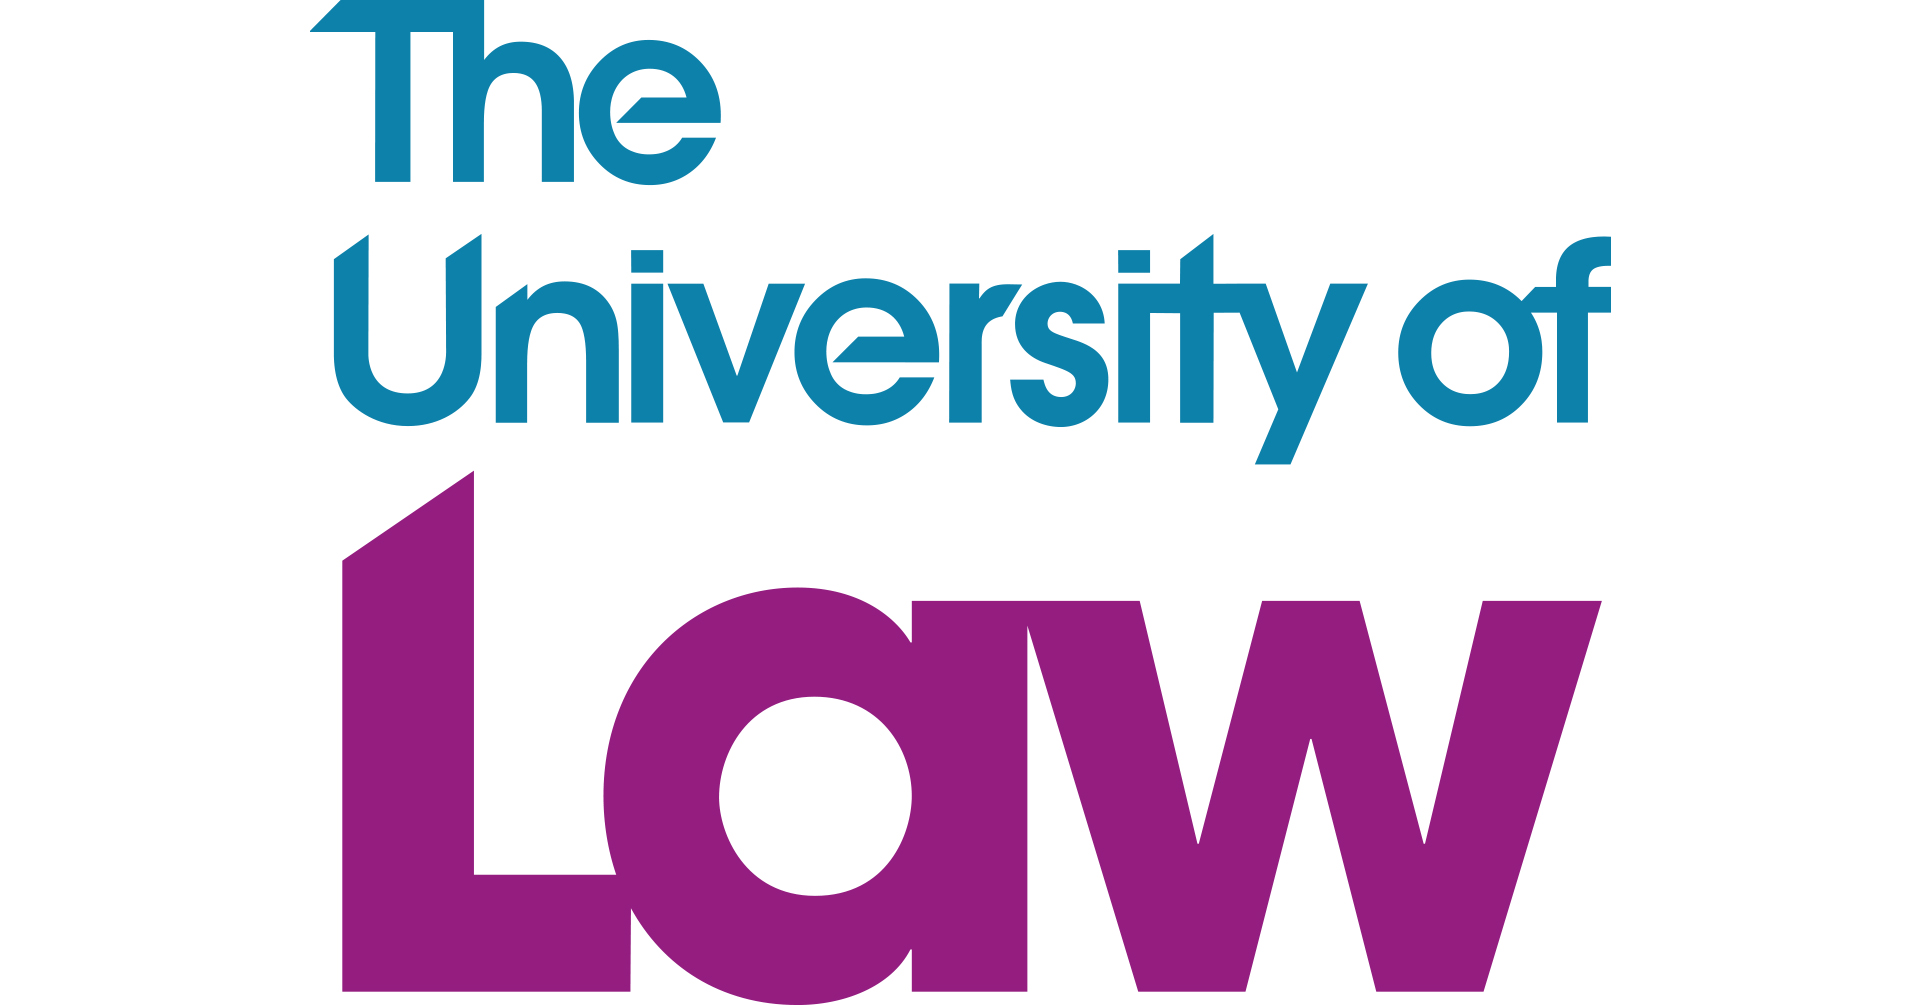 University of Law